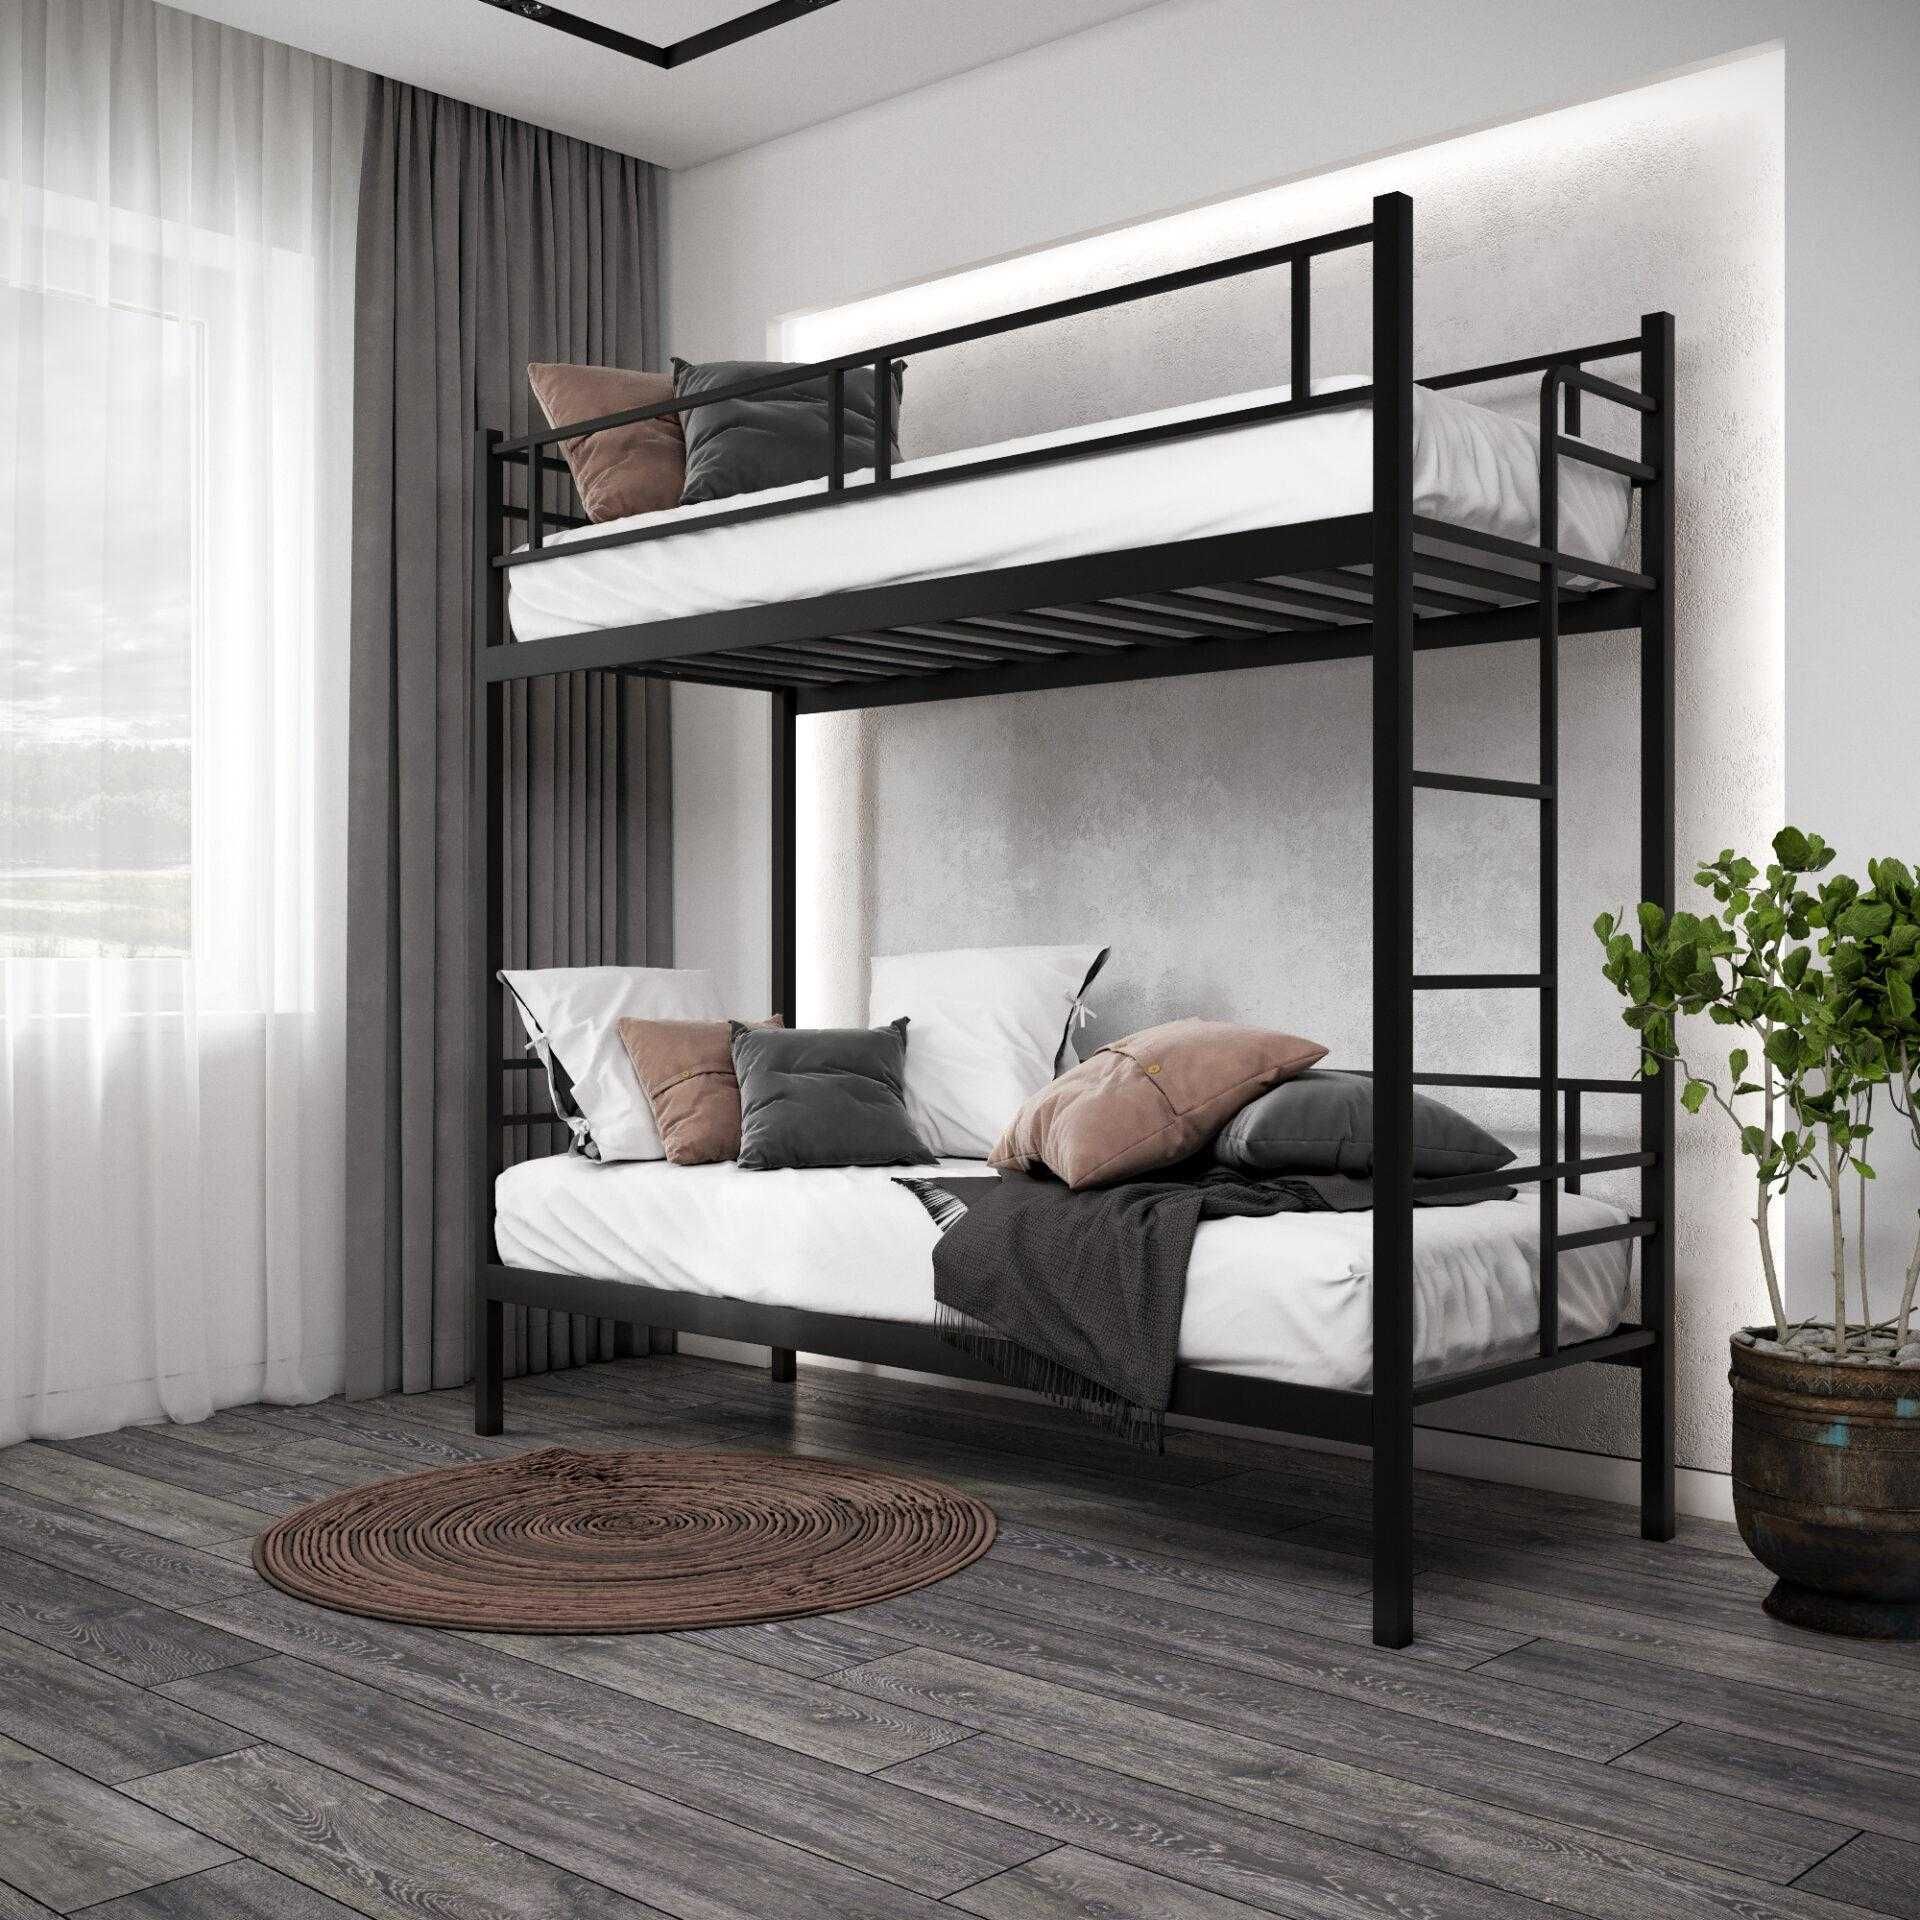 Кровать металлическая двухъярусная Comfort Duo, Комфорт дуо и другие.